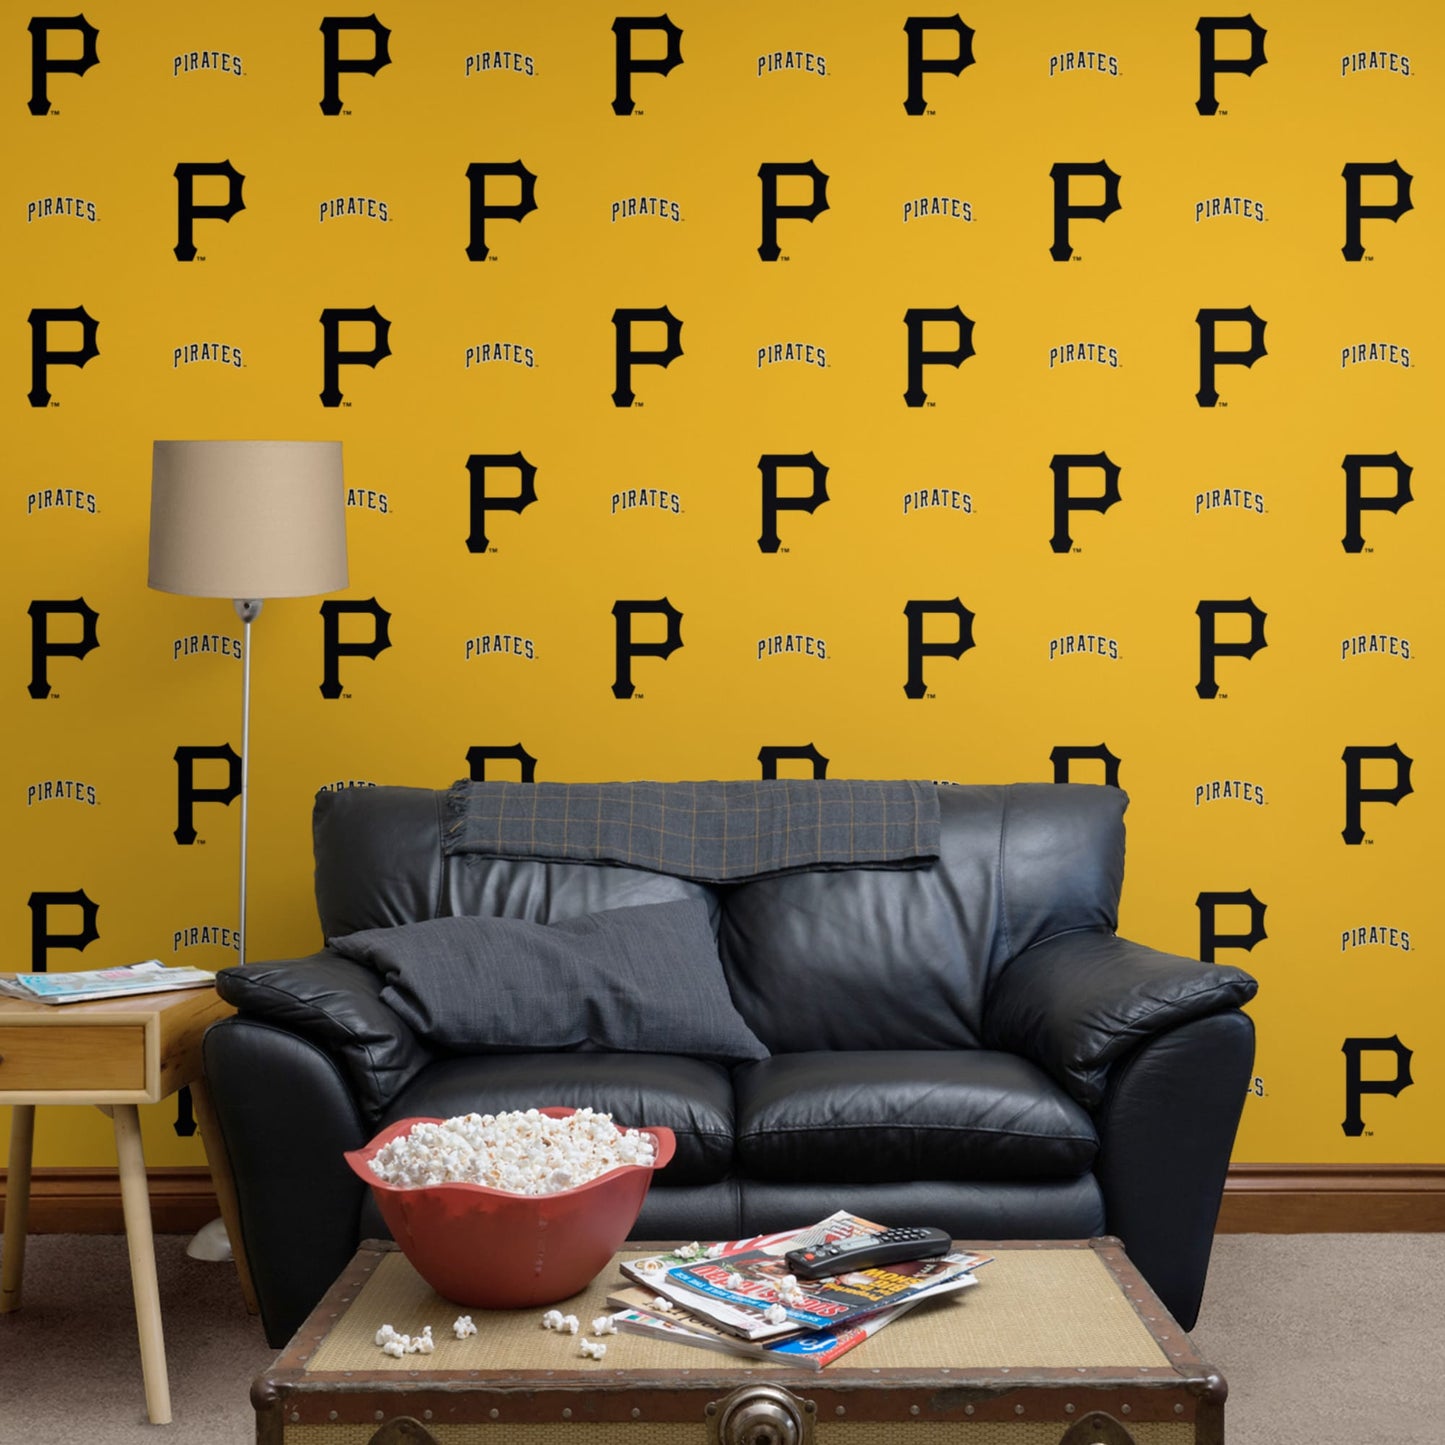 pittsburgh pirates yellow